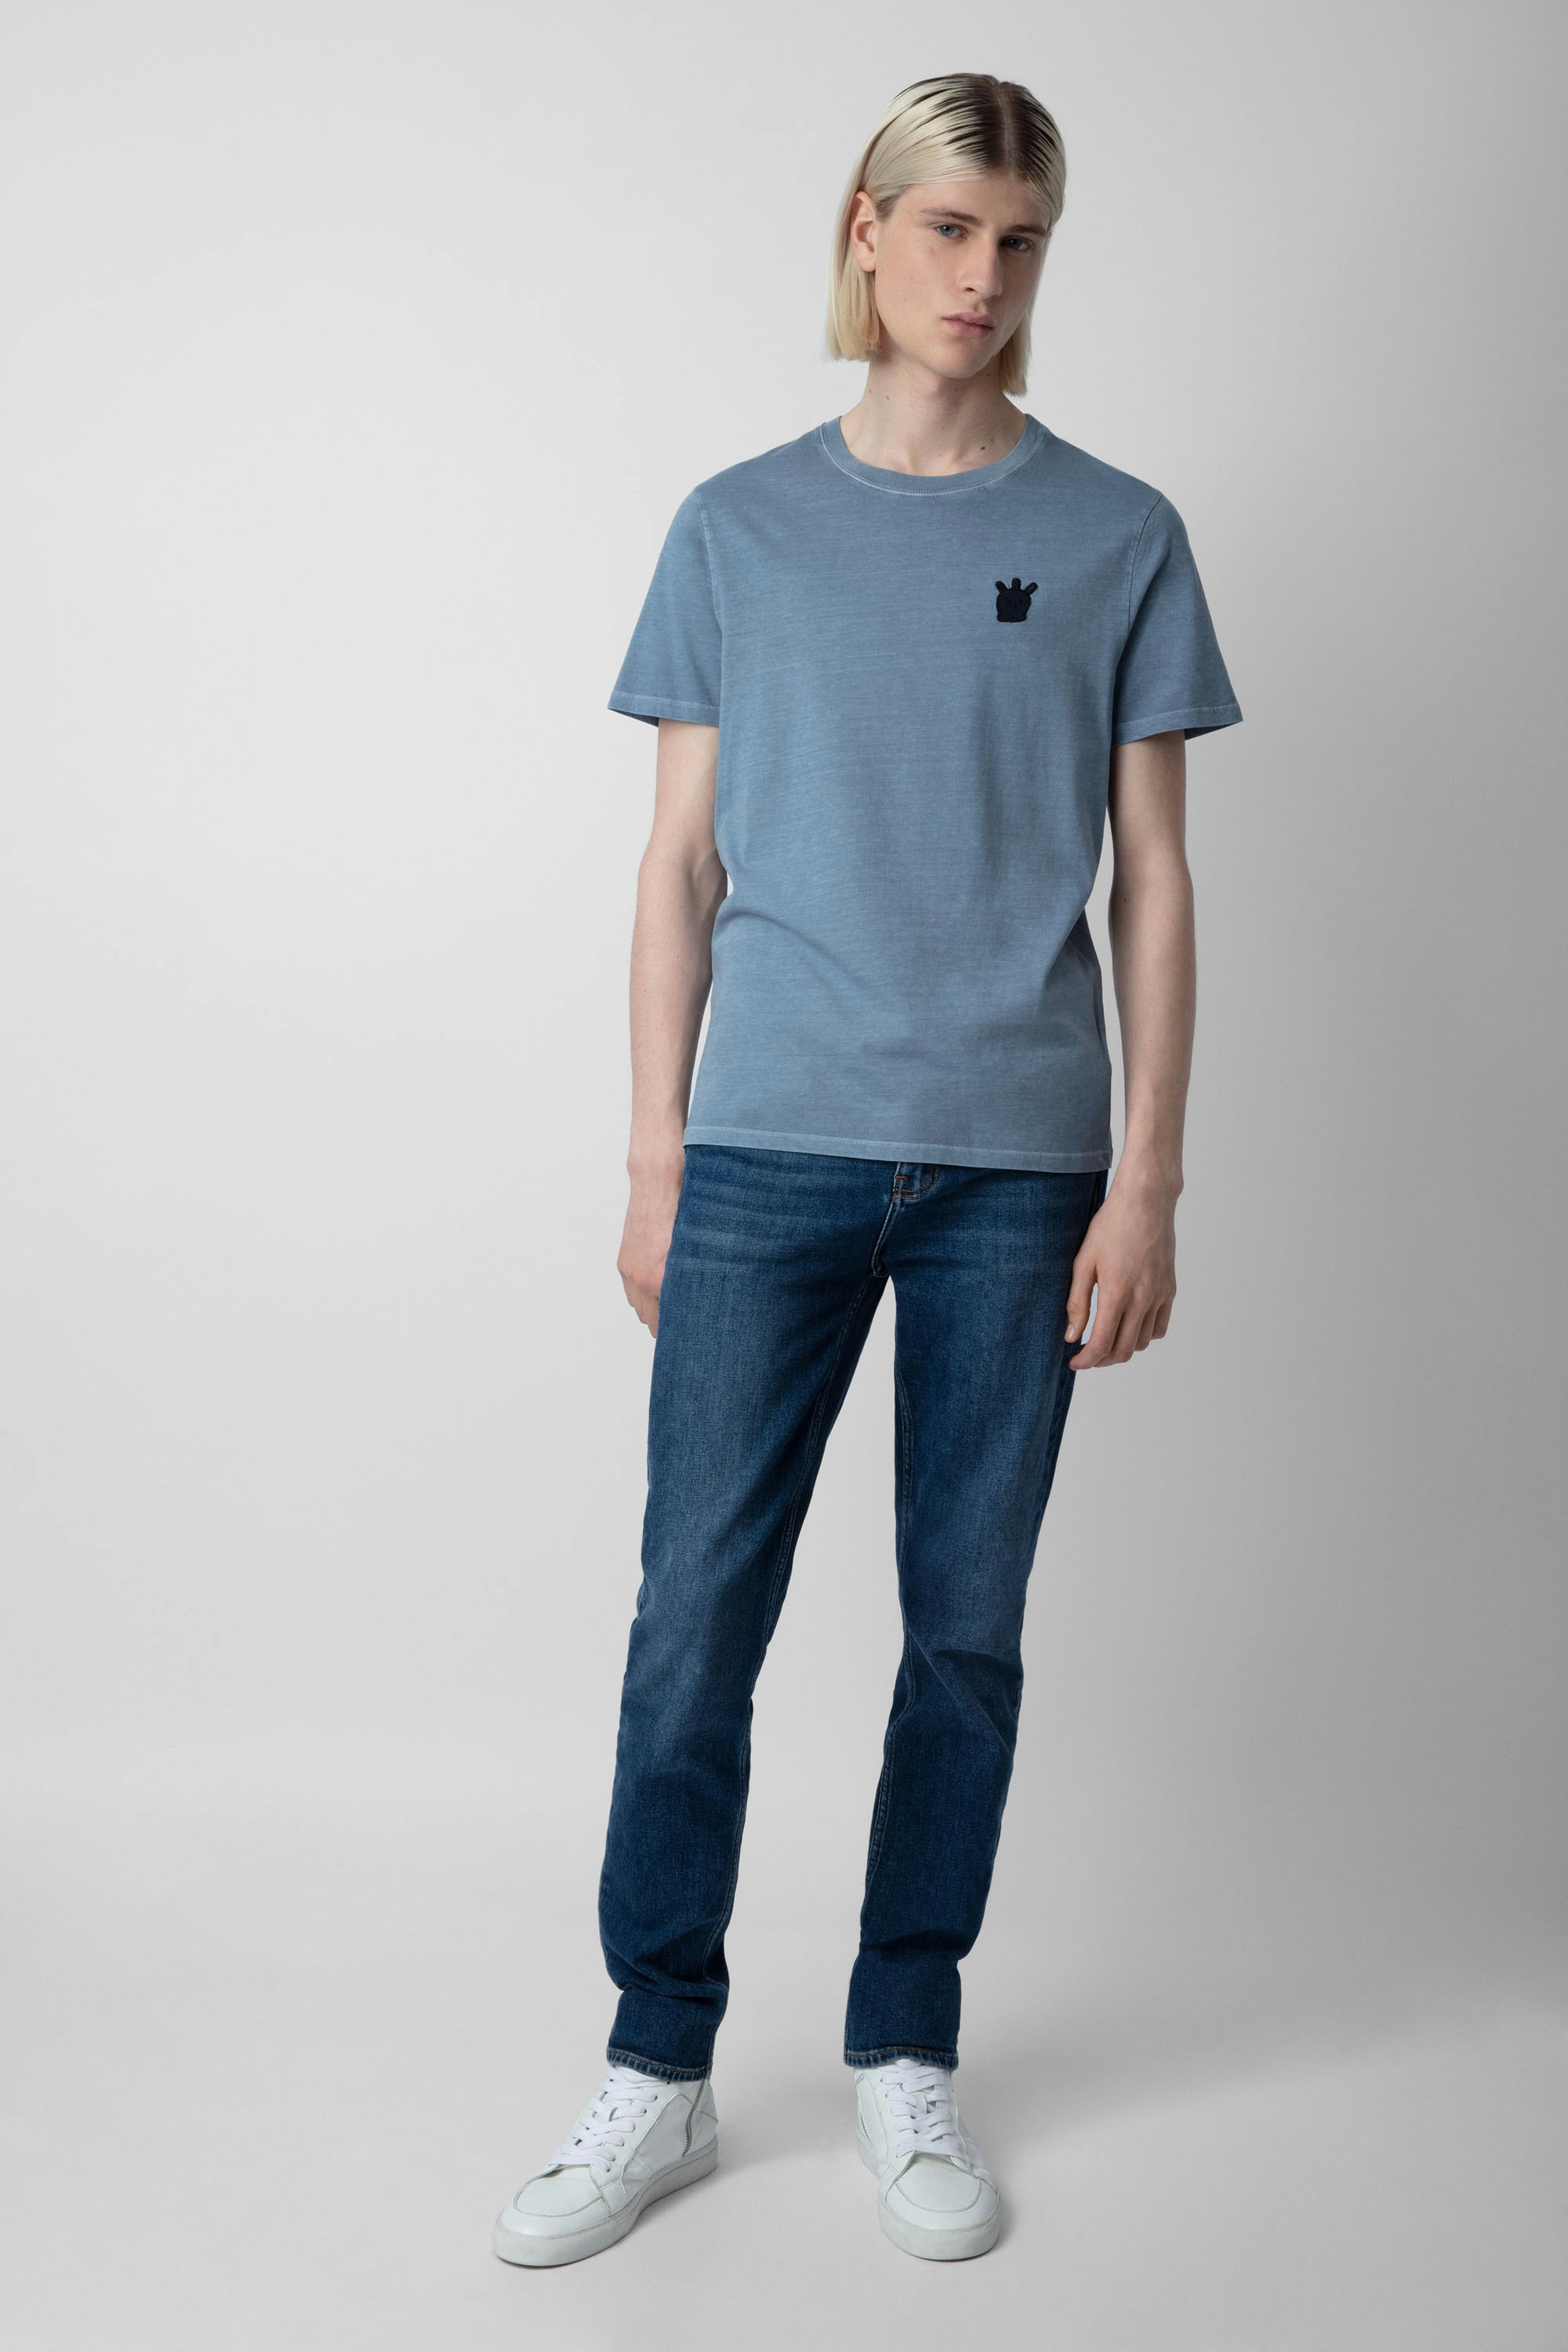 Camiseta Tommy Skull - Camiseta azul de algodón para hombre con parche de calavera XO en el pecho